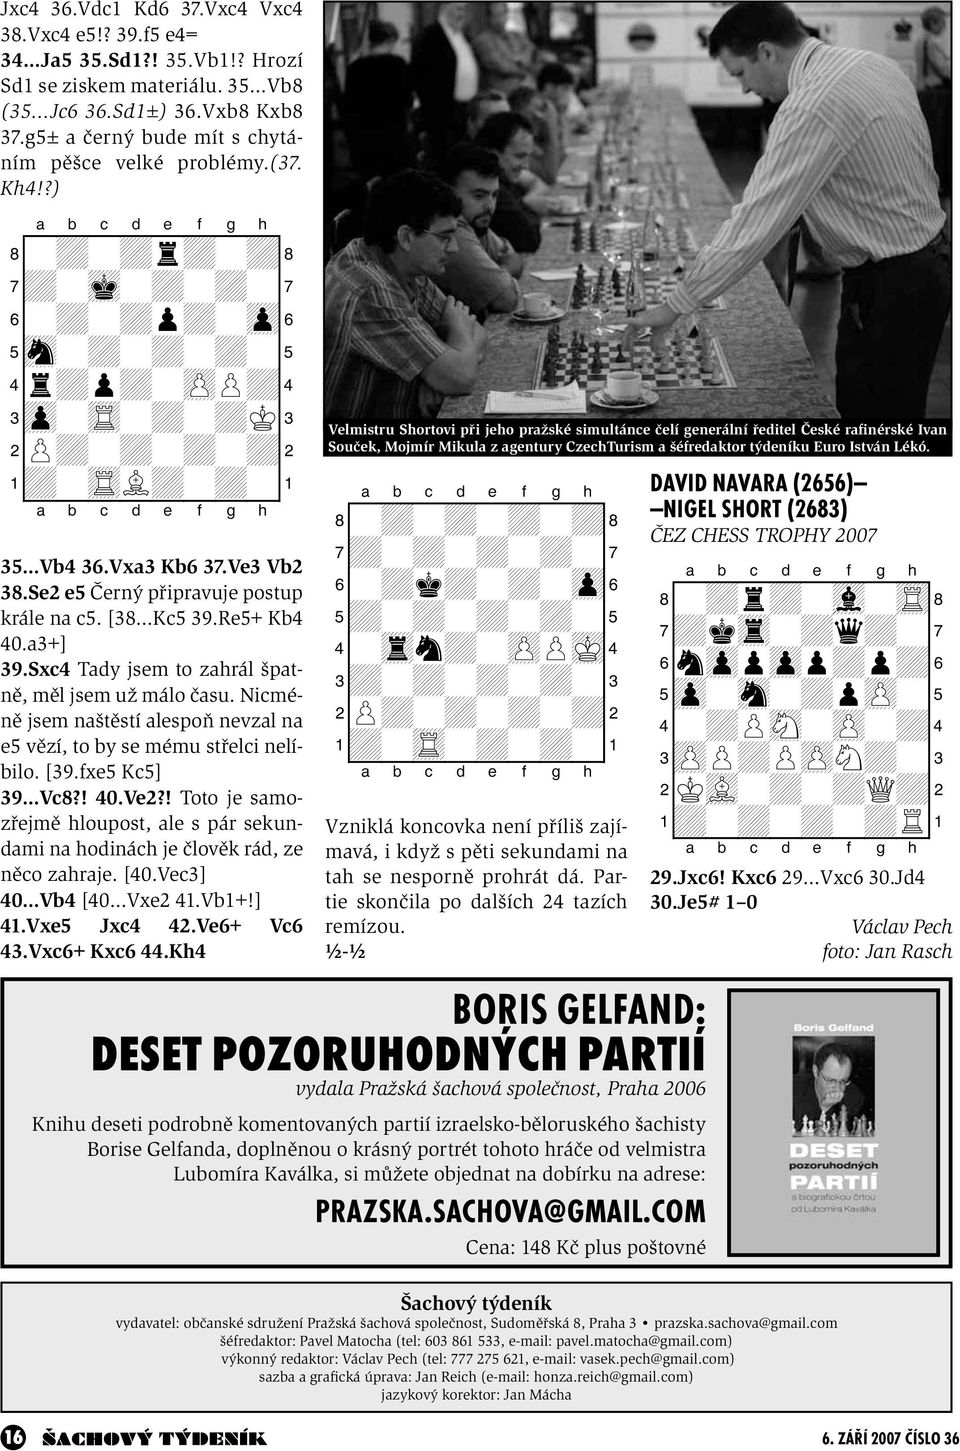 Se2 e5 Černý připravuje postup krále na c5. [38 Kc5 39.Re5+ Kb4 40.a3+] 39.Sxc4 Tady jsem to zahrál špatně, měl jsem už málo času.